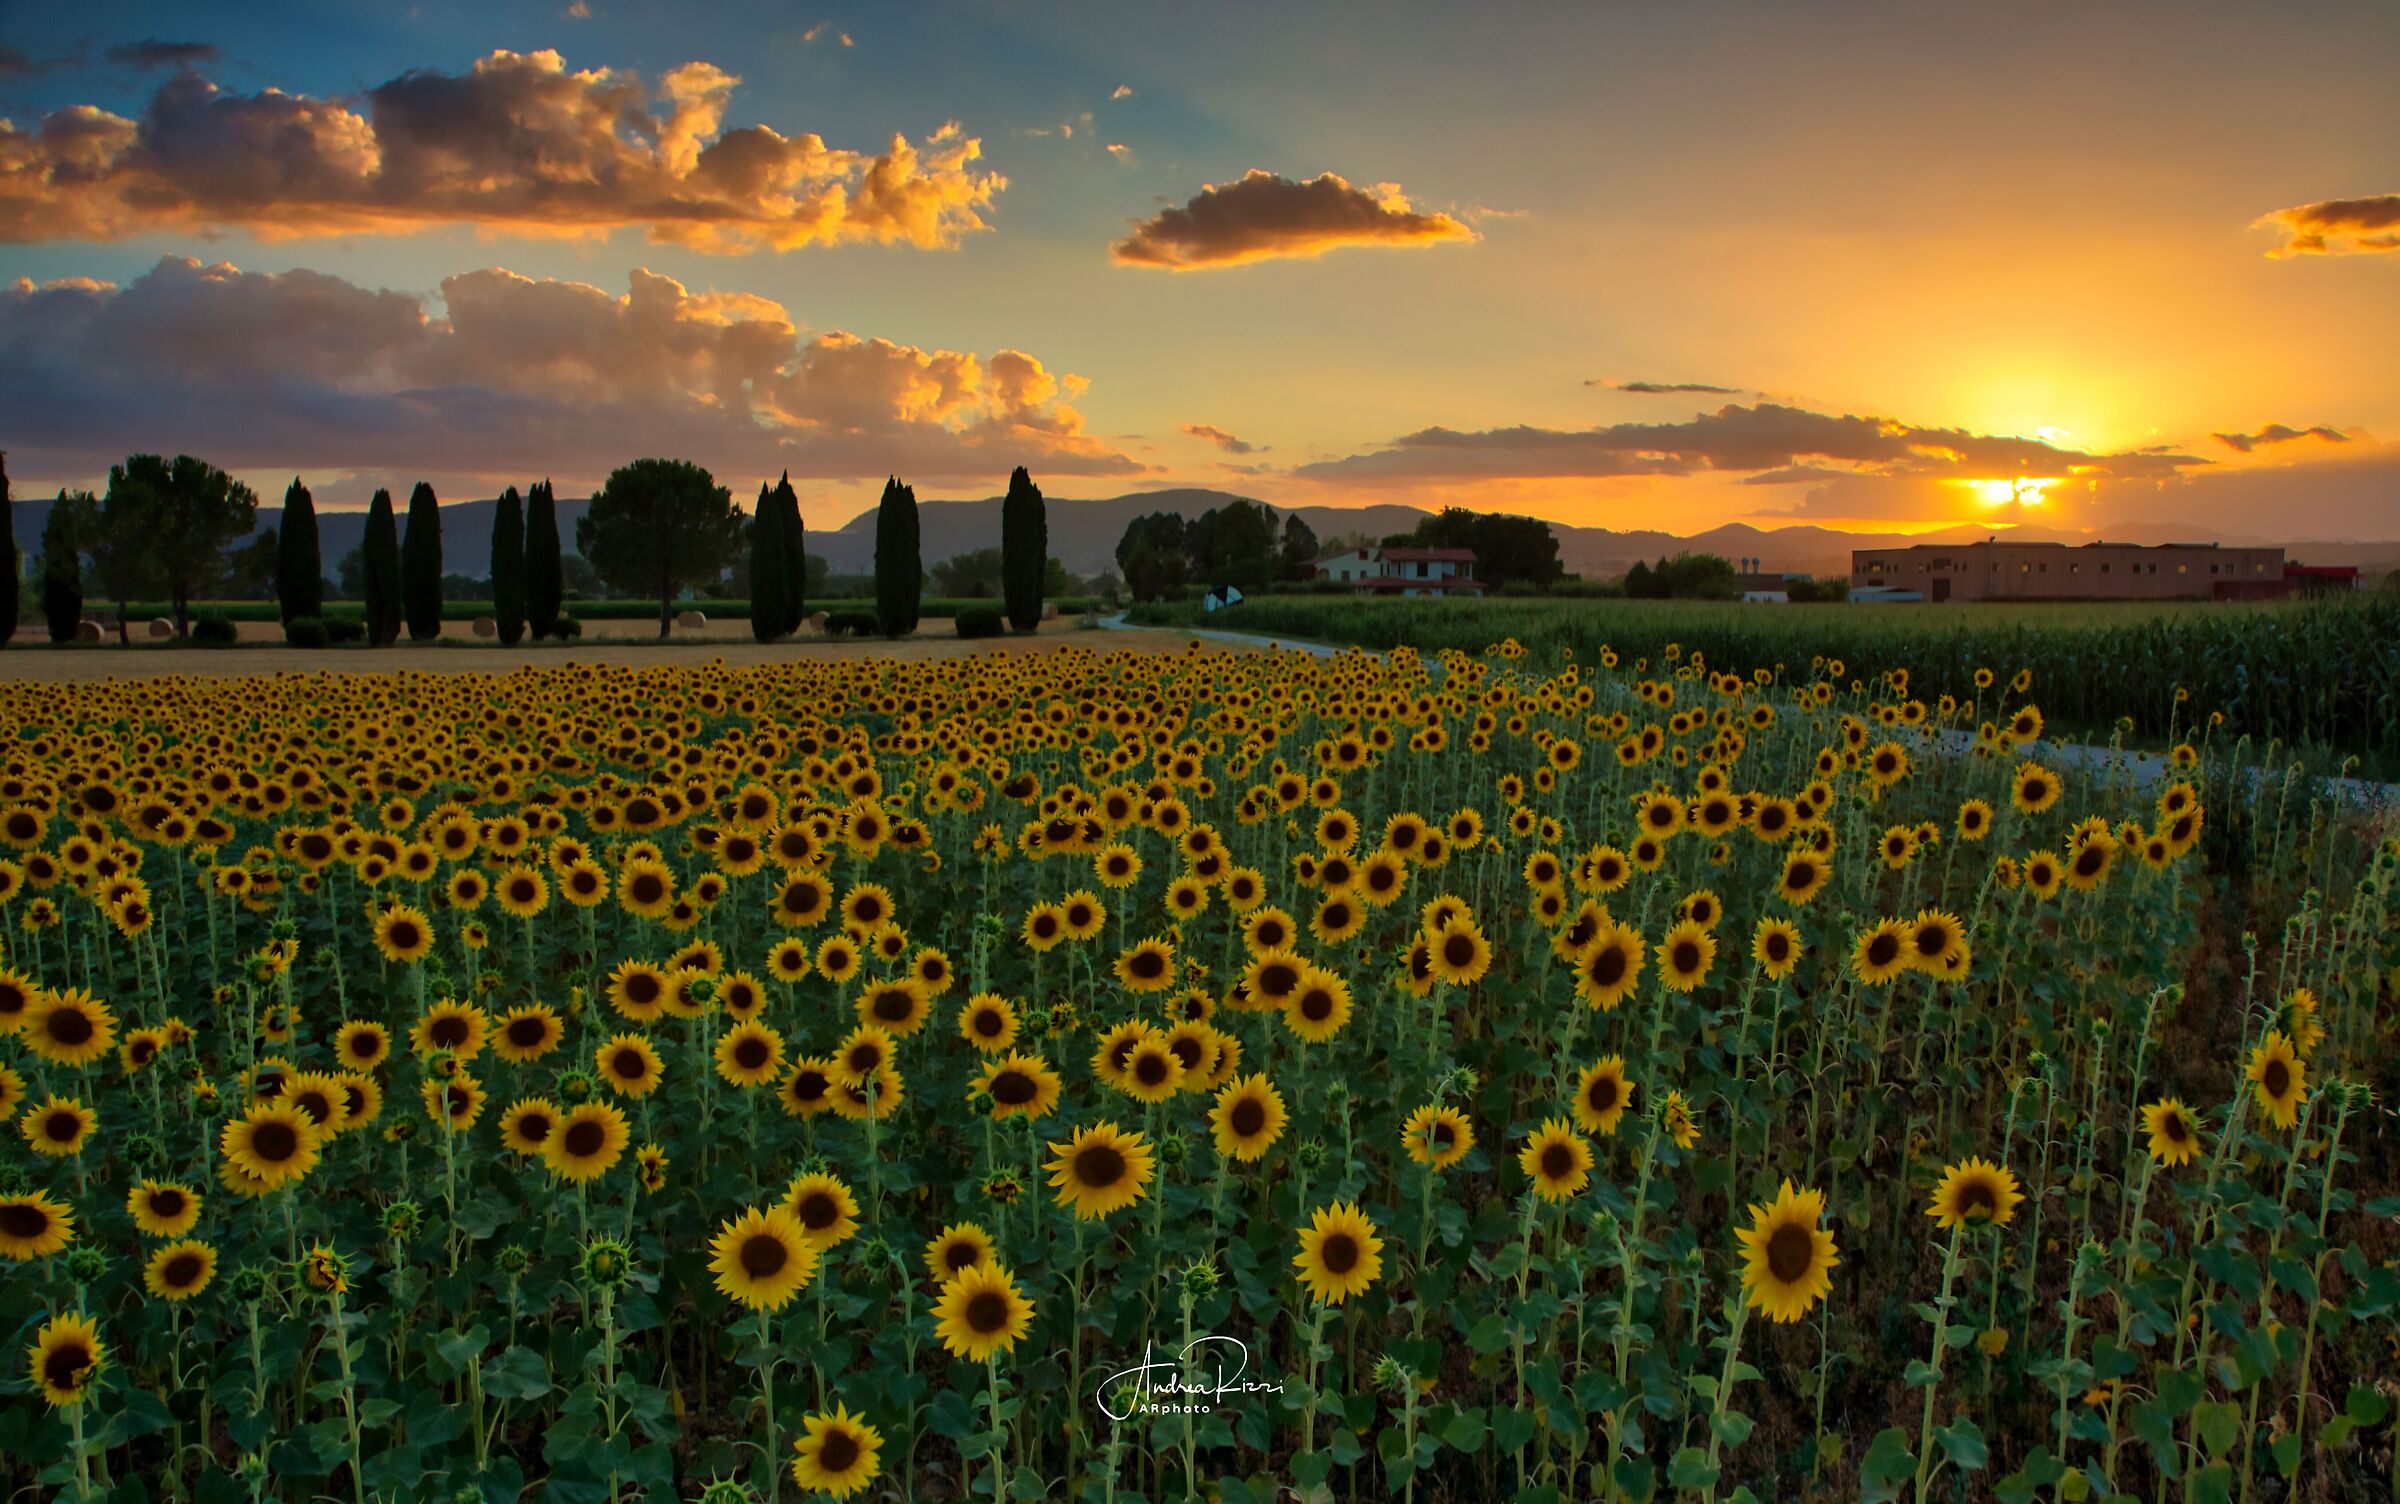 Sunset & Sunflowers...